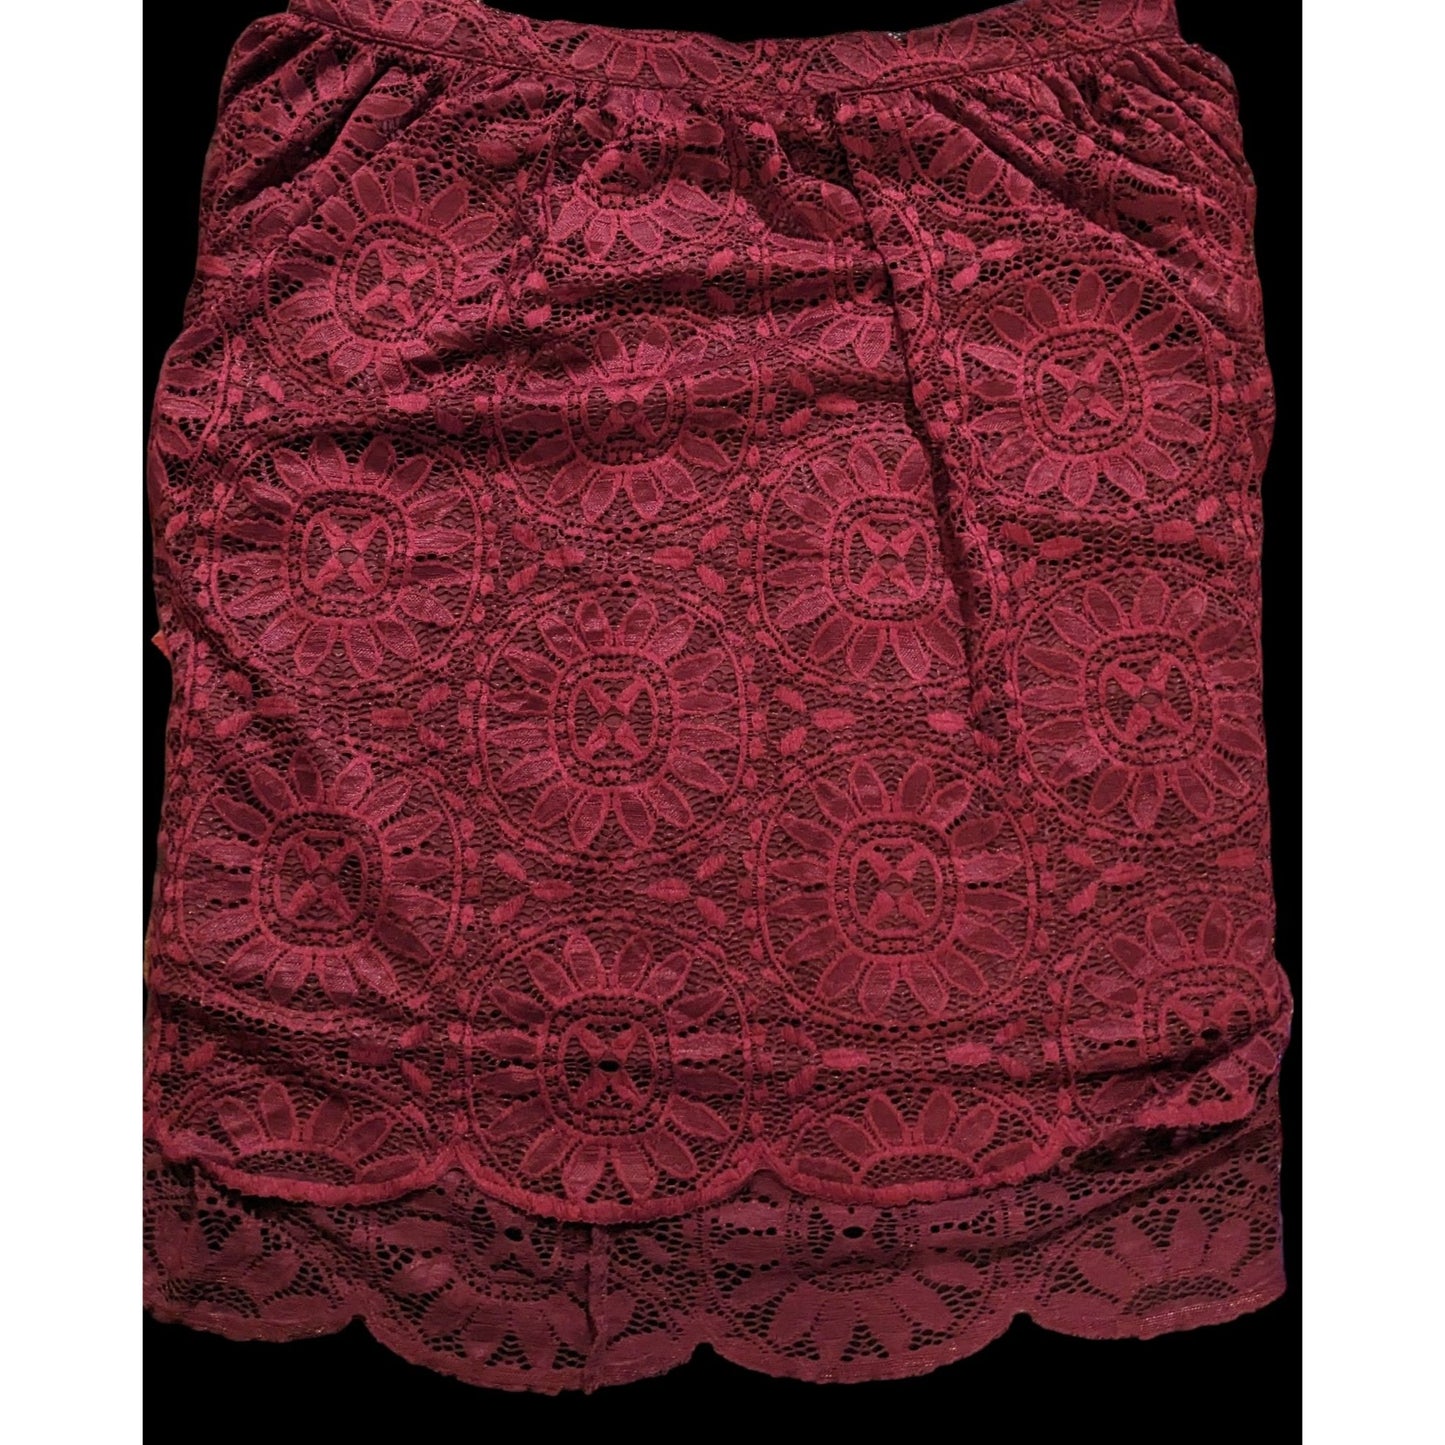 Xhilaration Burgundy Floral Lace Gothic Skirt